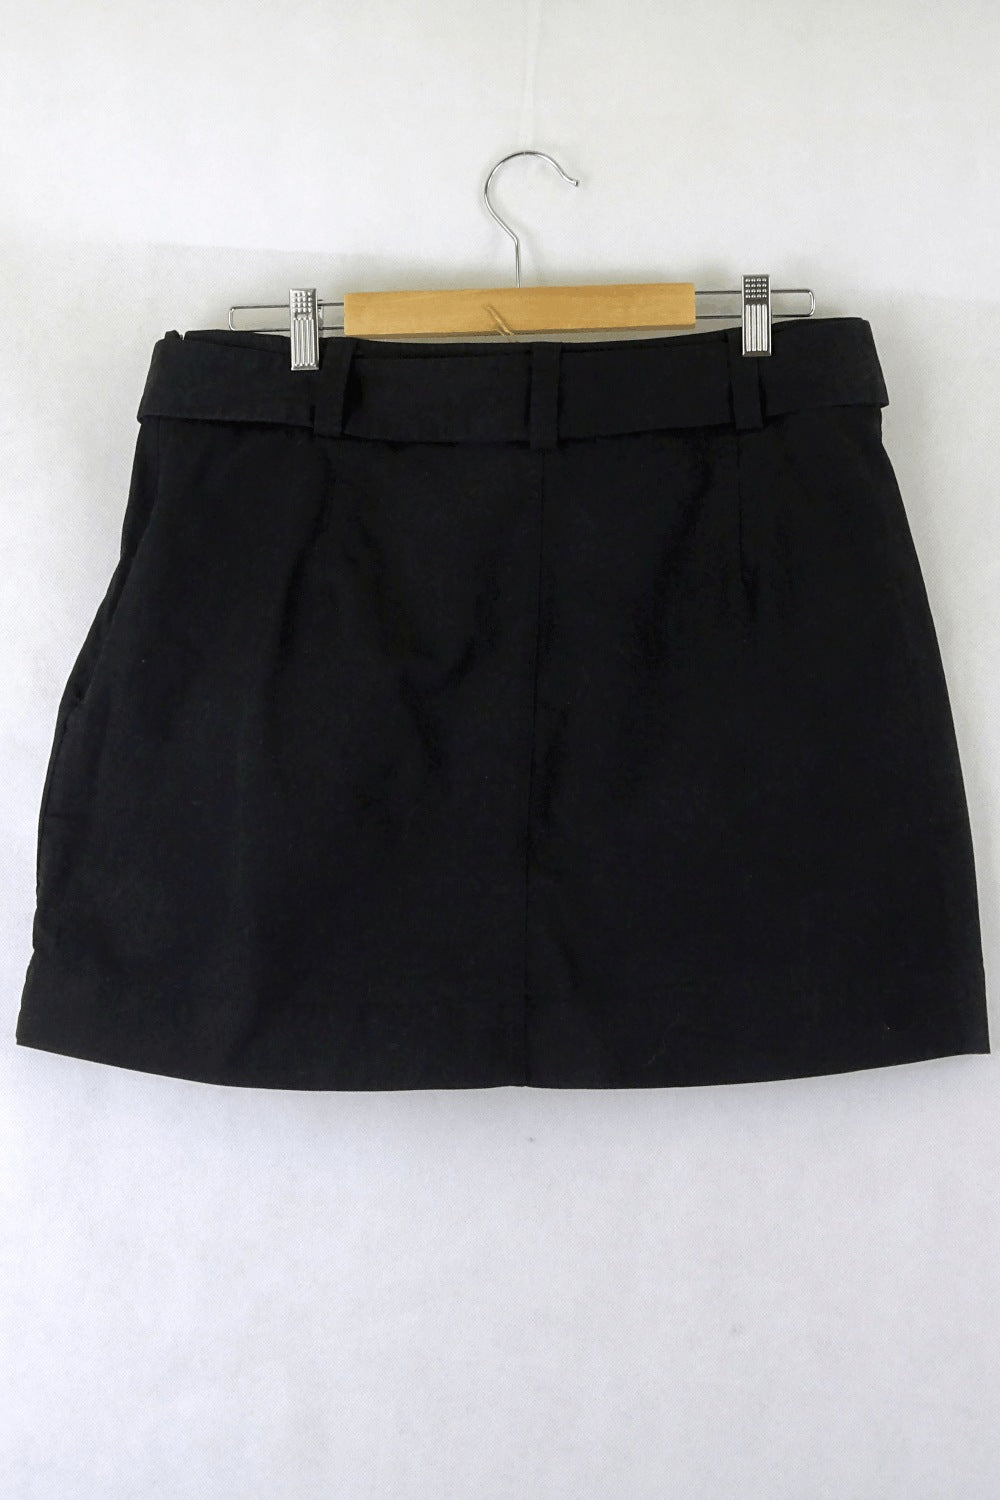 Piper Black Skirt 14